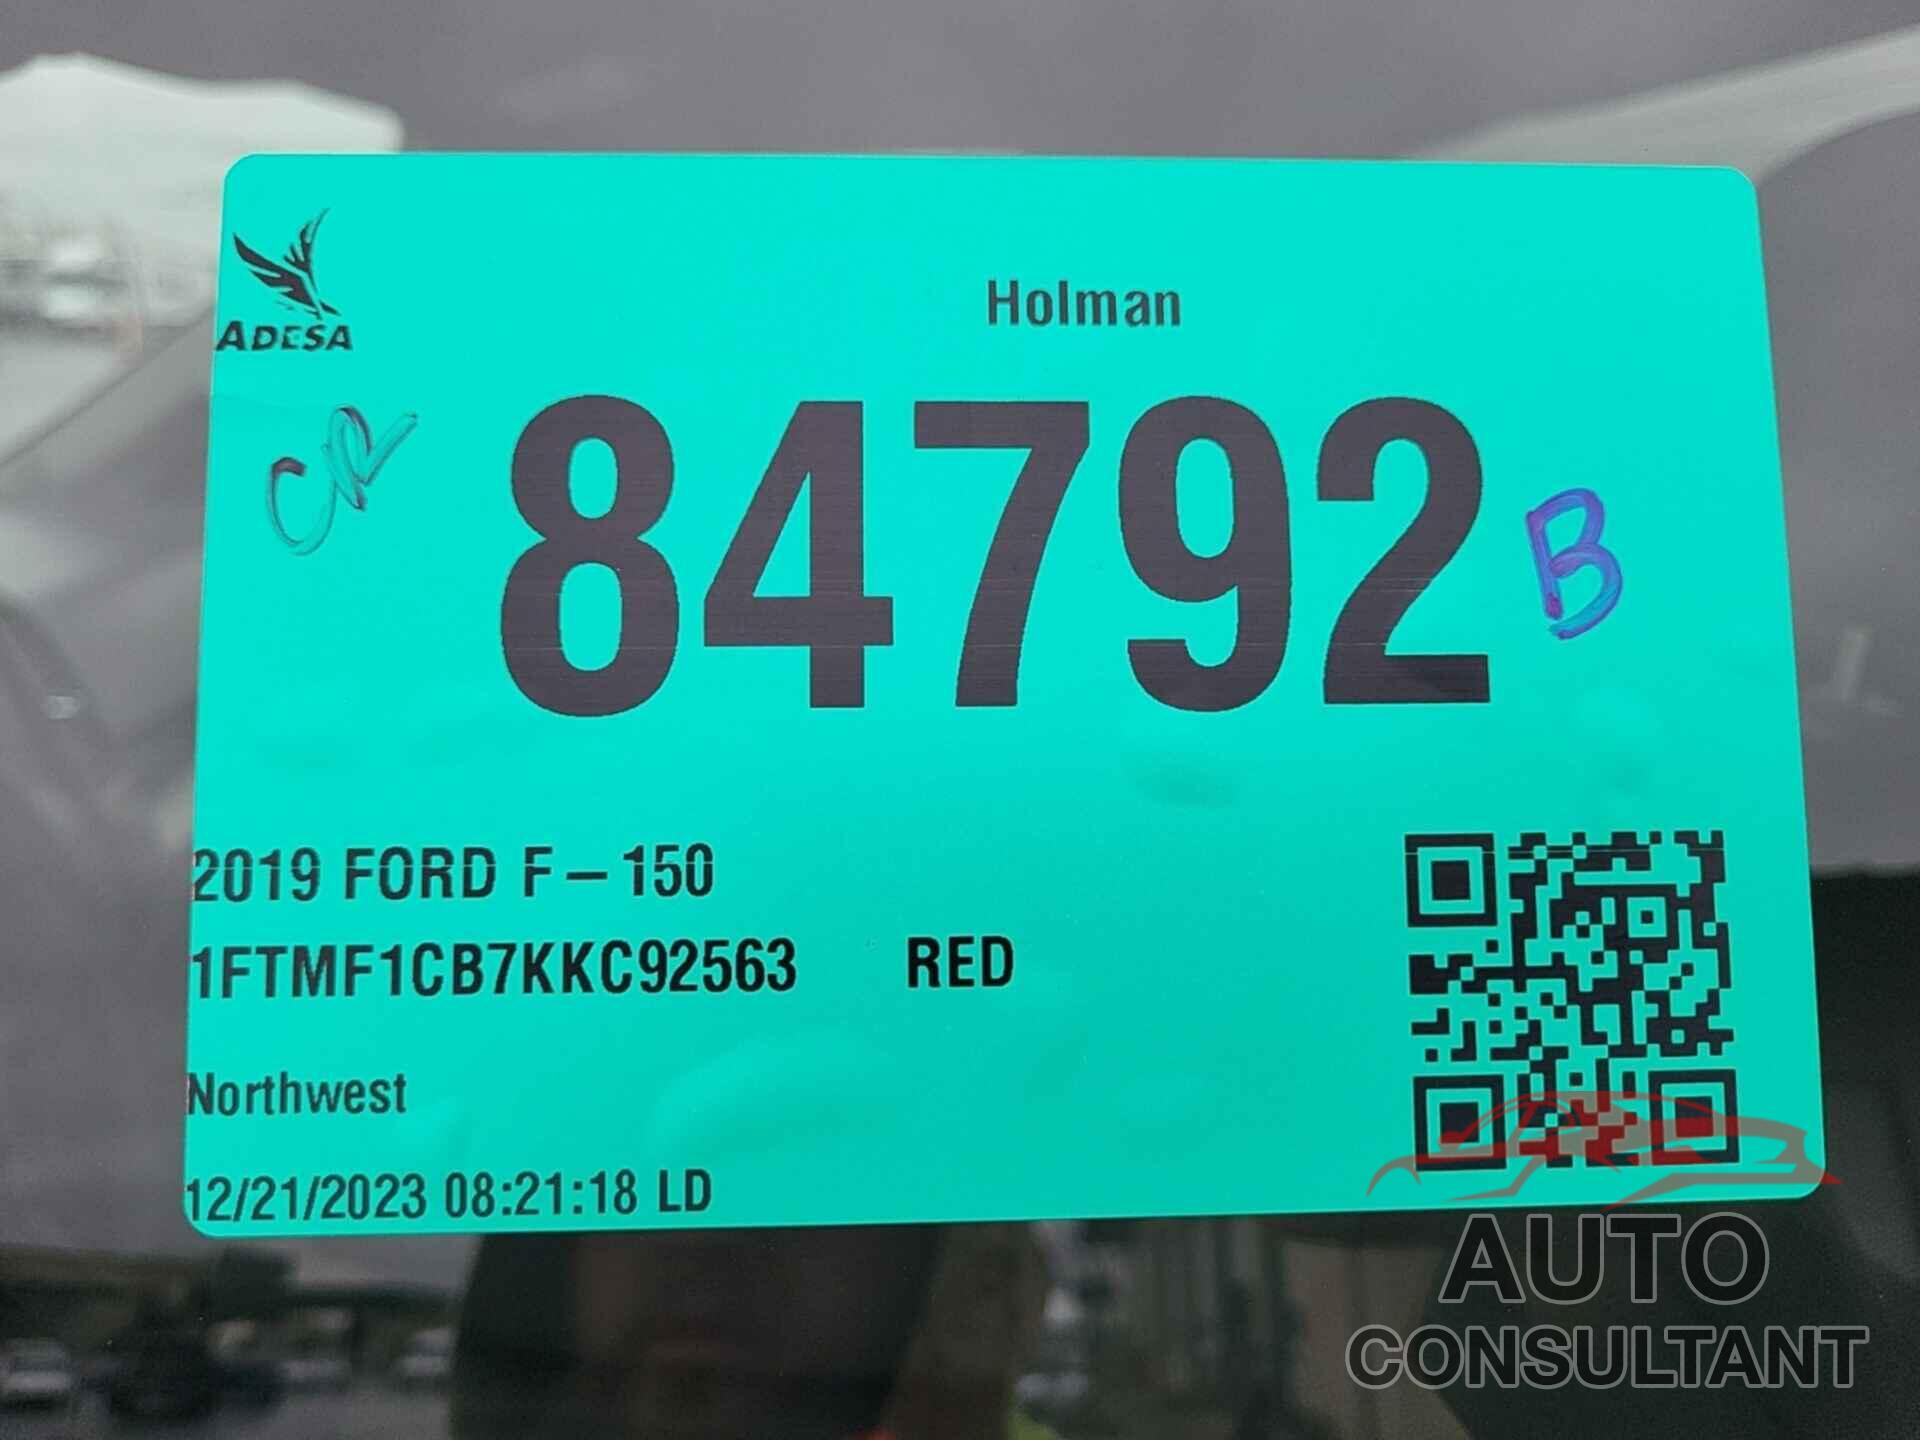 FORD F150 2019 - 1FTMF1CB7KKC92563